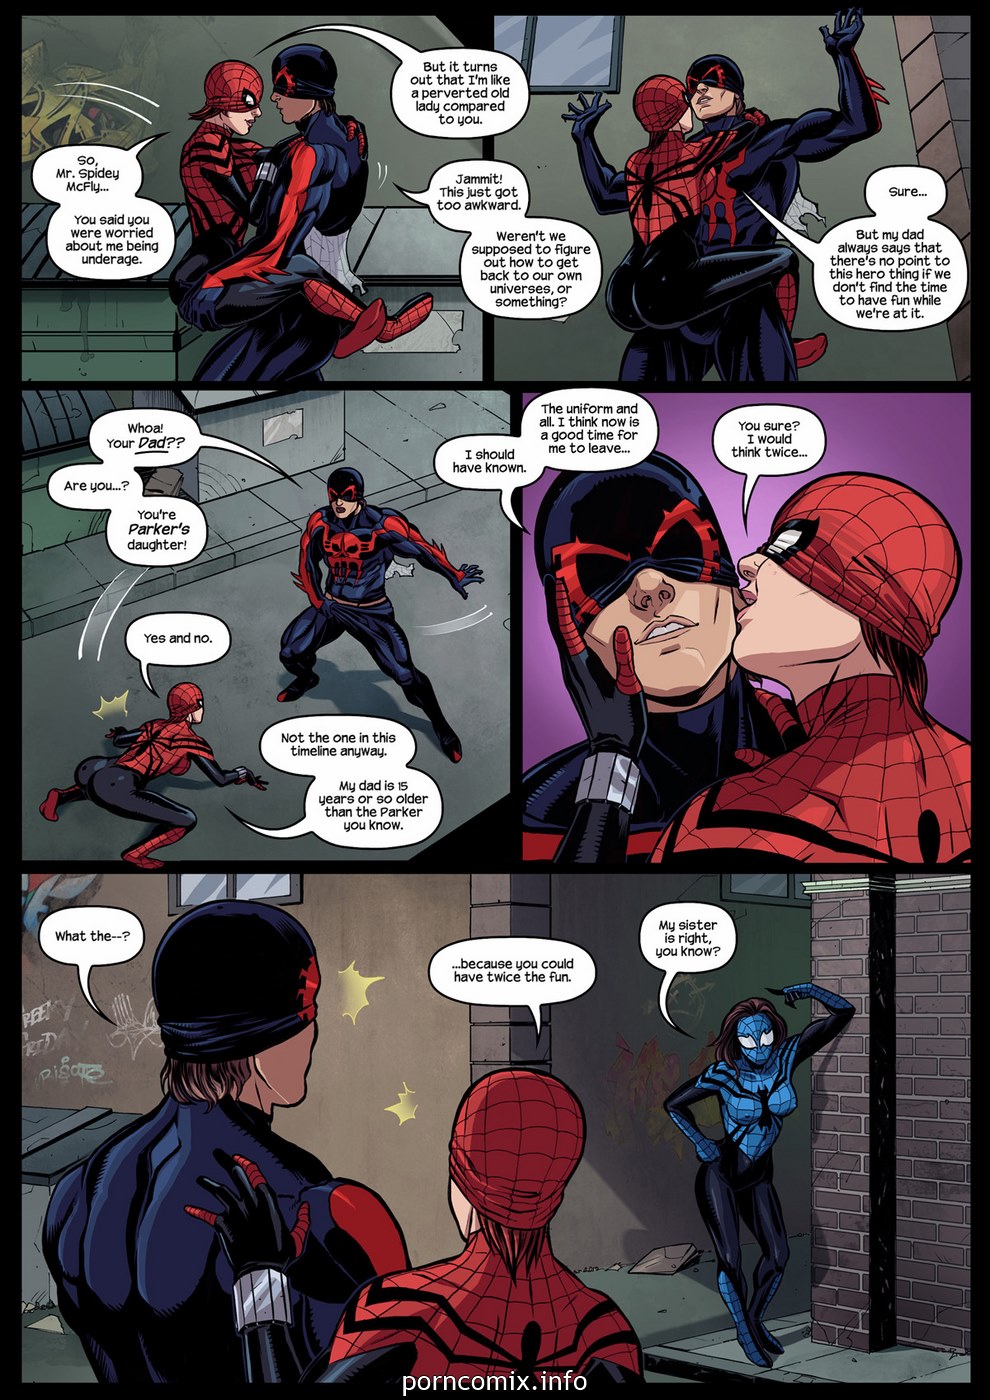 Spider-Girl Spider-Man 2099.